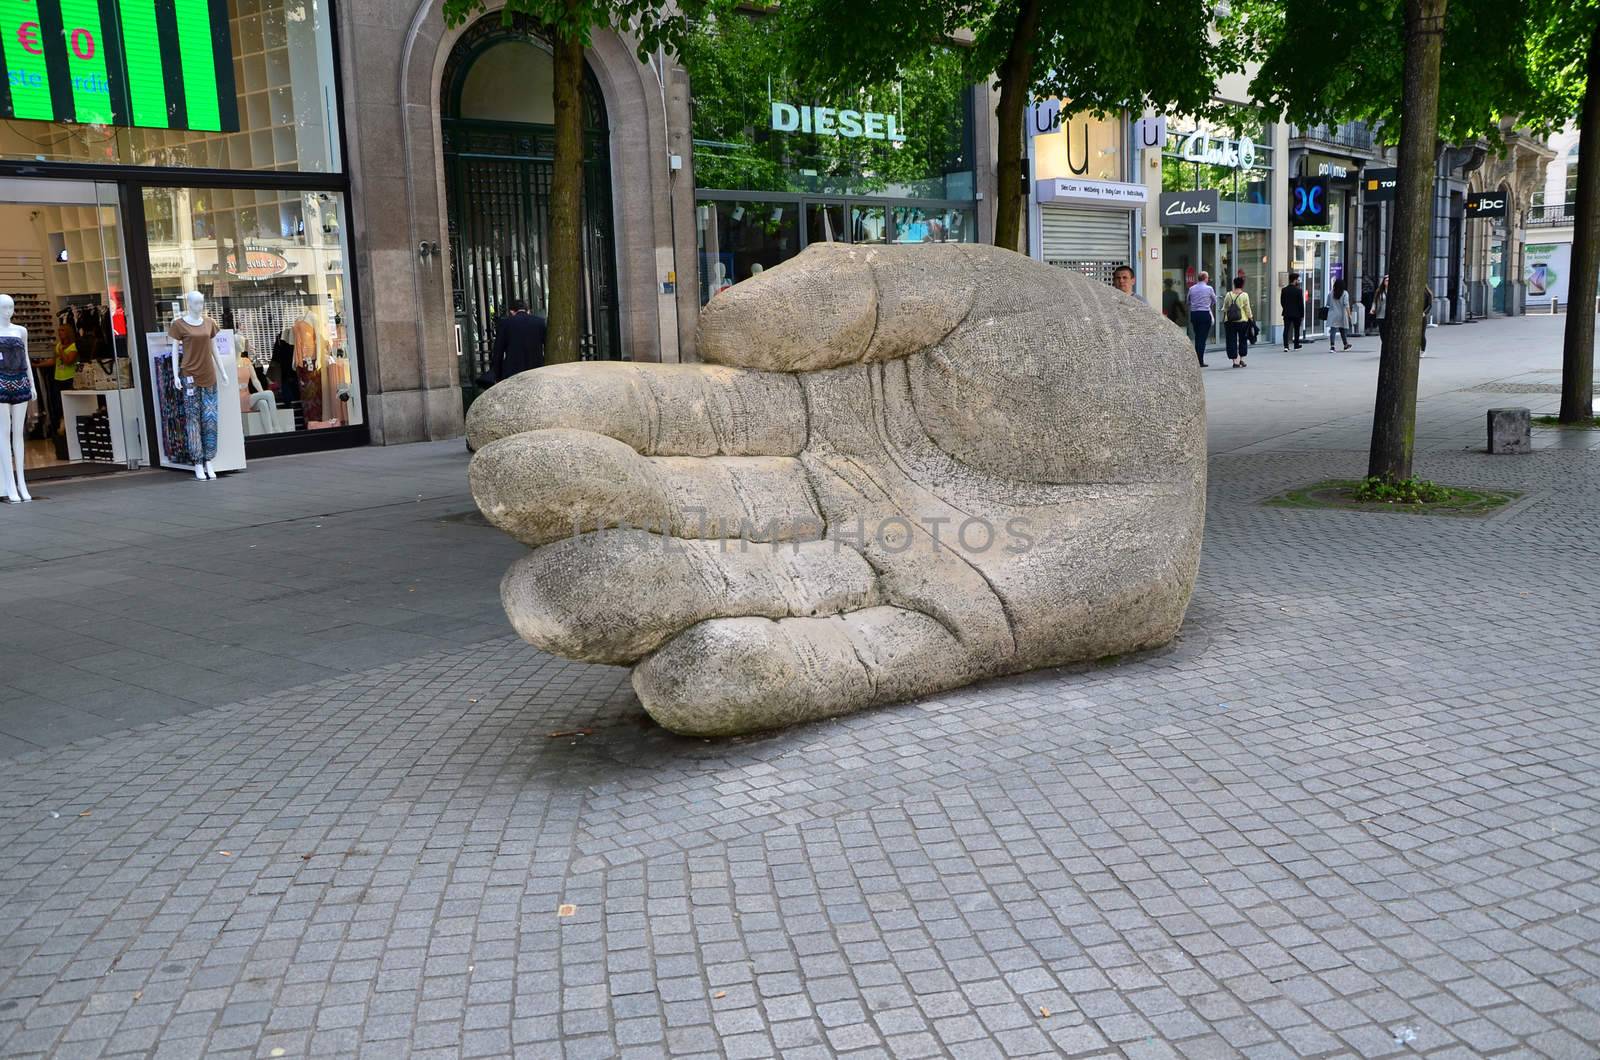 Antwerp, Belgium - May 10, 2015: Giant Hand statue on Meir street in Antwerp by siraanamwong